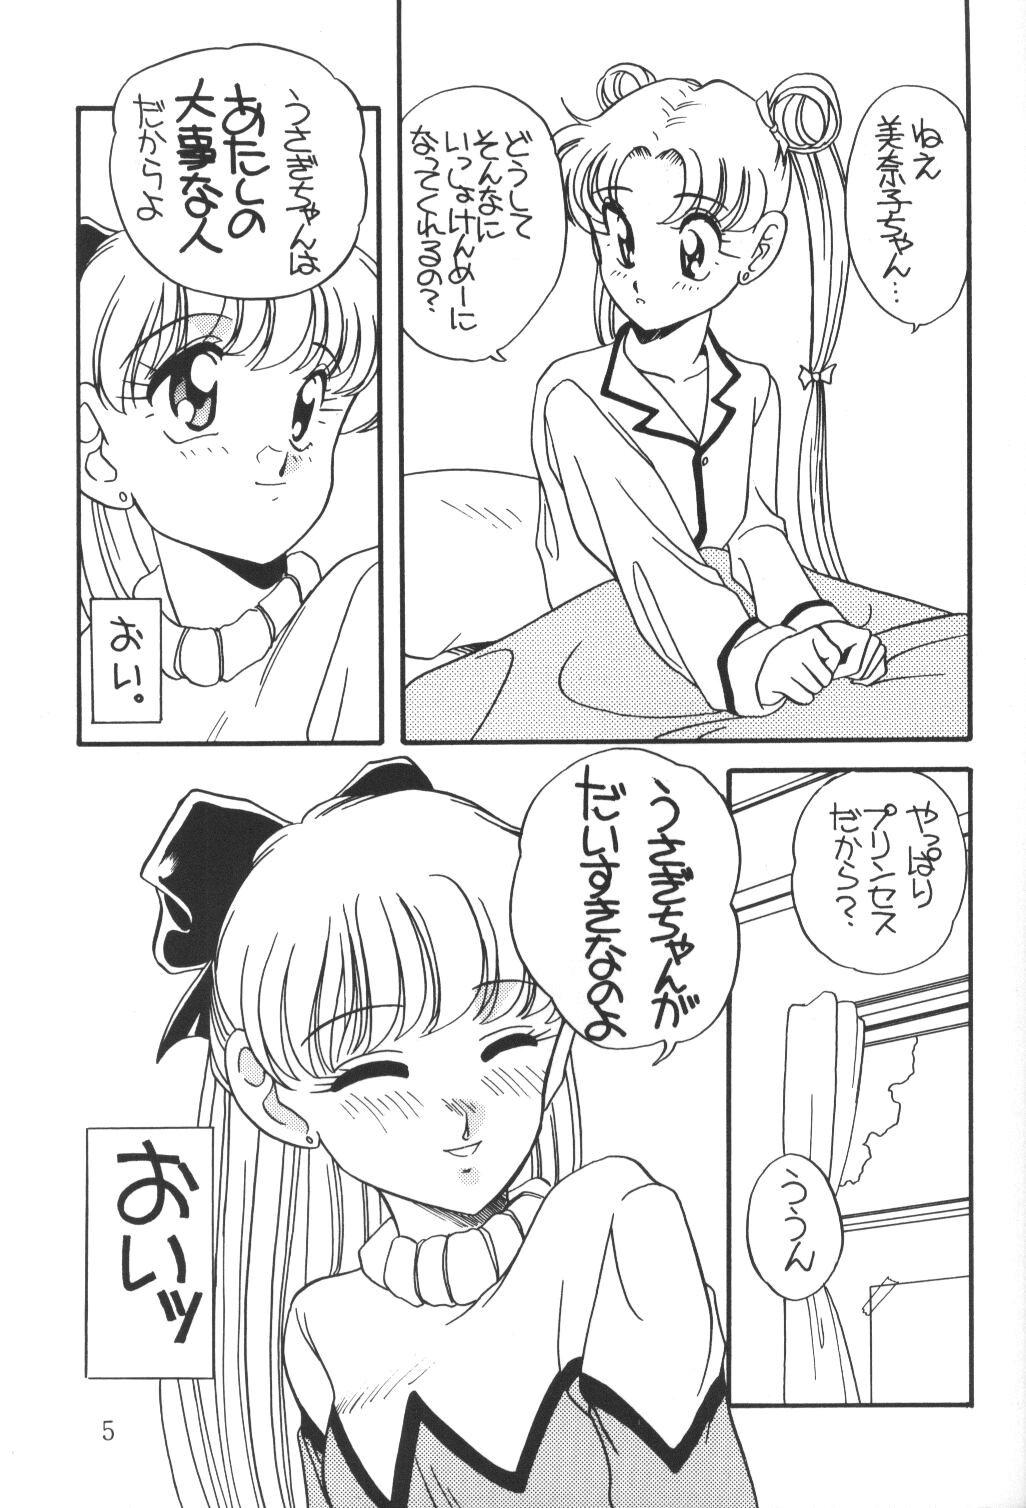 Morrita Elfin 9 - Sailor moon Bigdick - Page 4